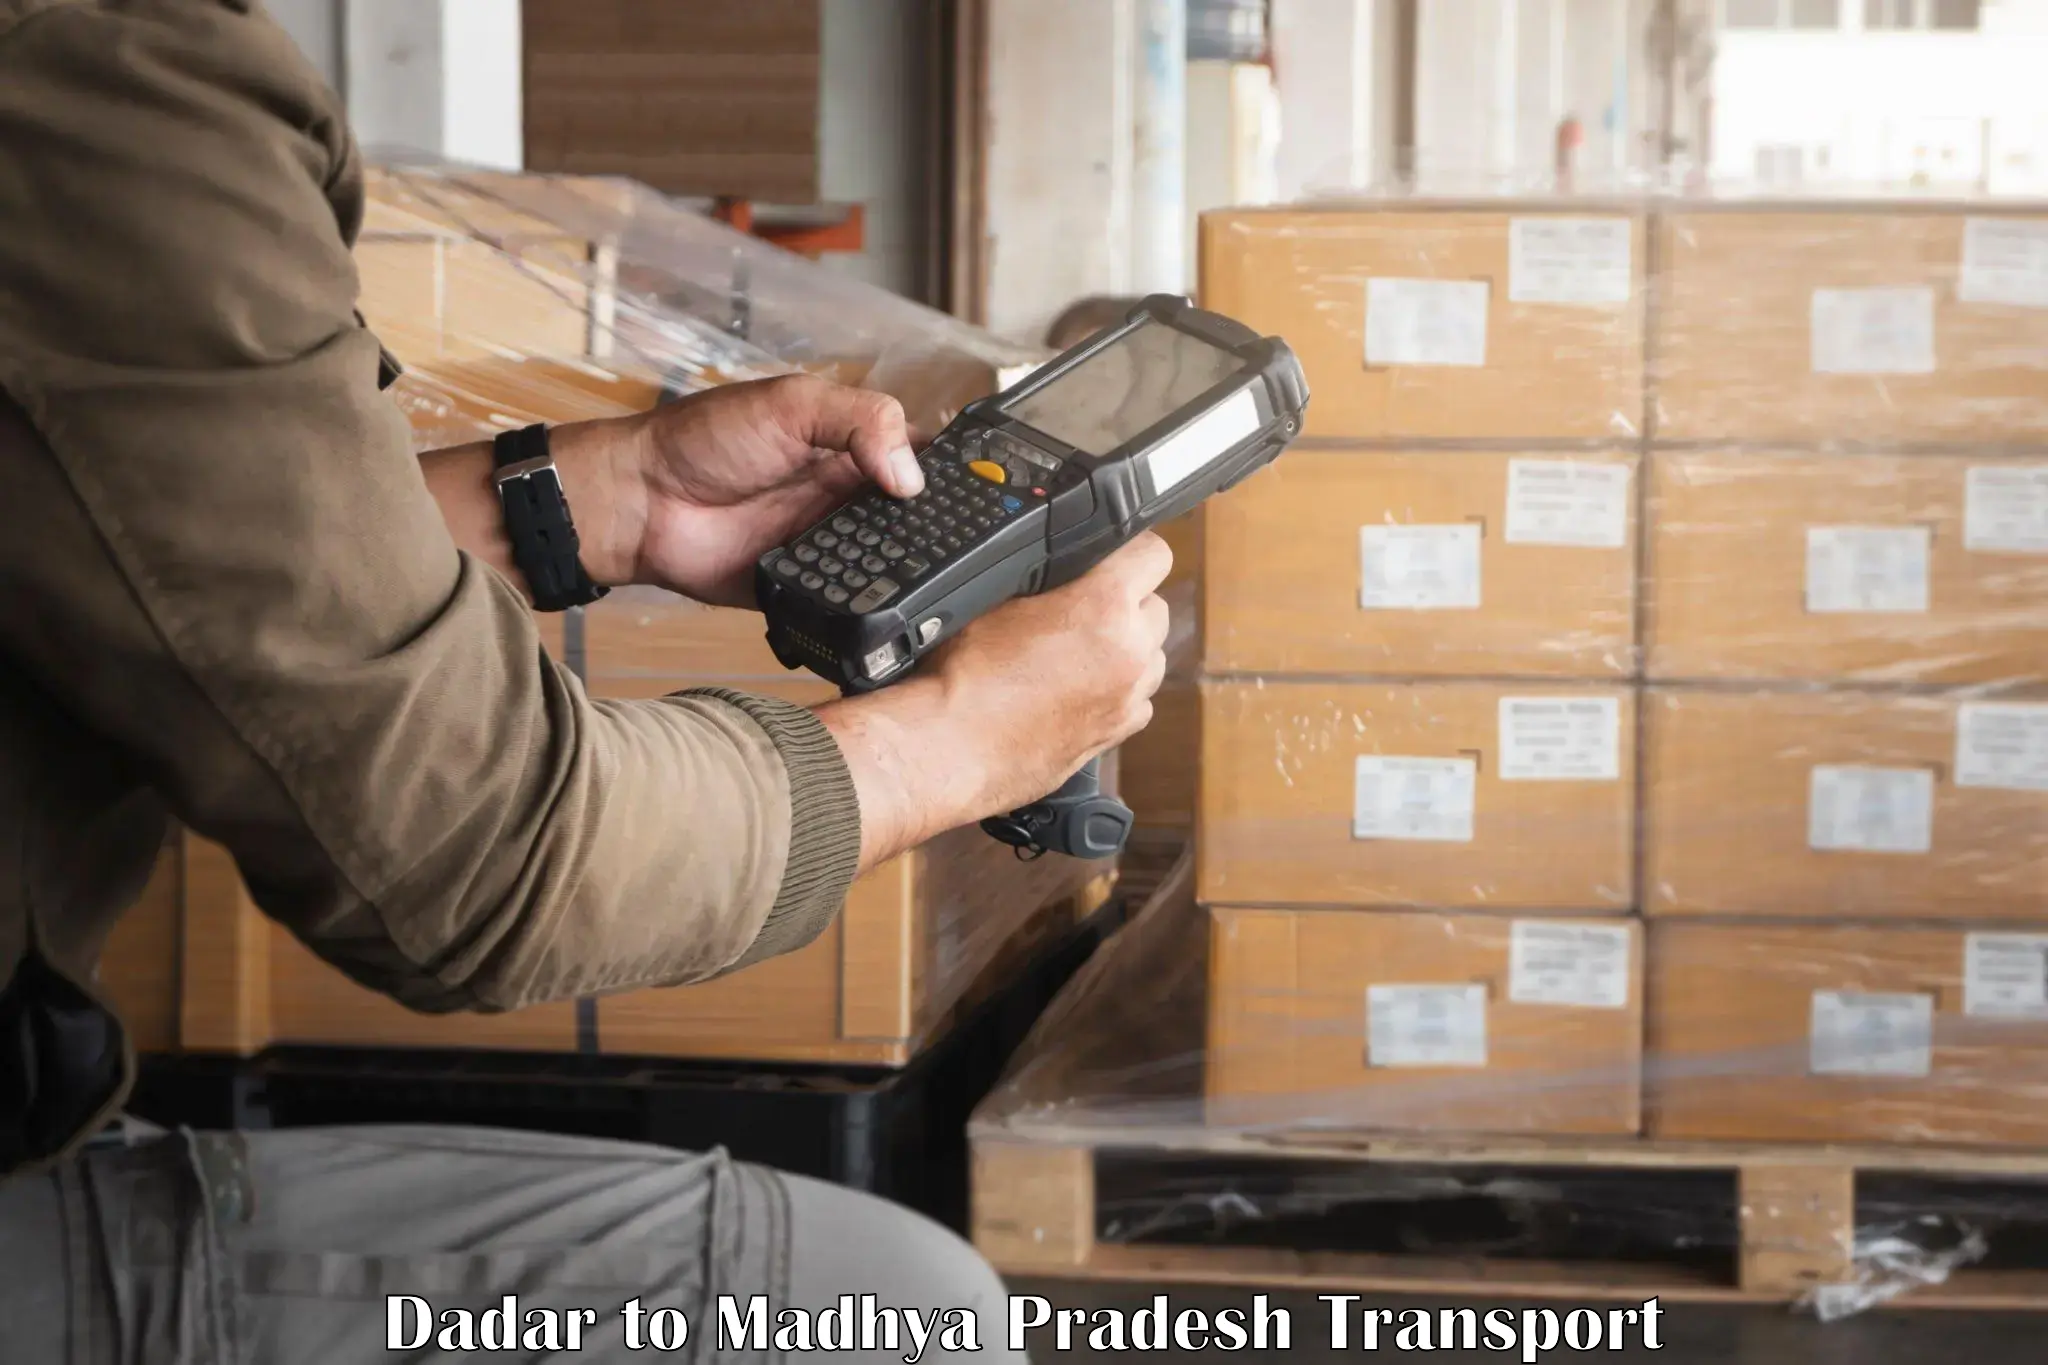 Shipping services Dadar to Sausar